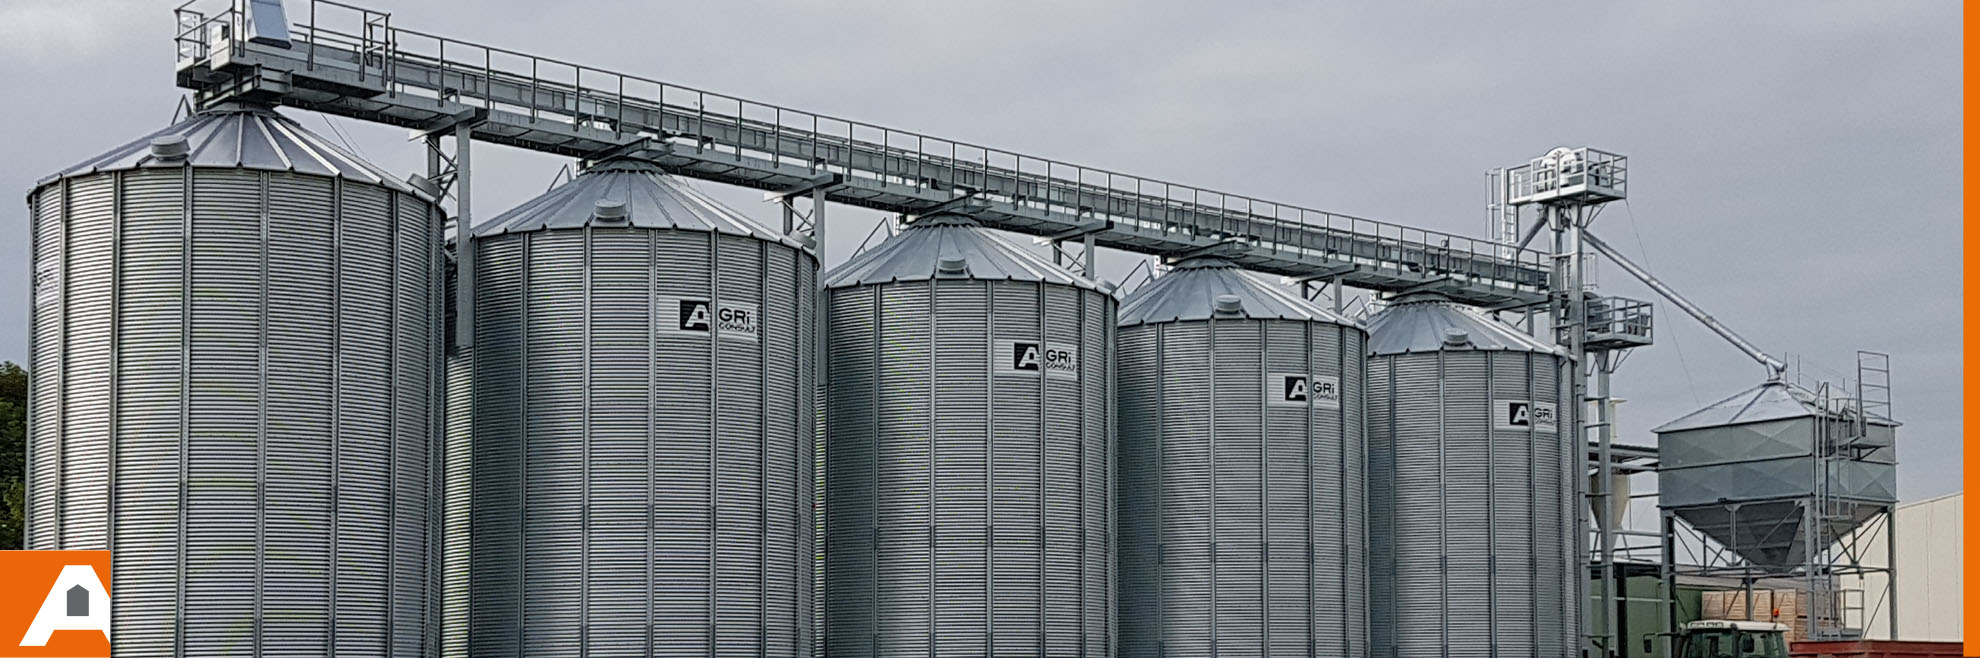 Silo a grain Agriconsult, cellule de stockage cereales agricole ou  industriel